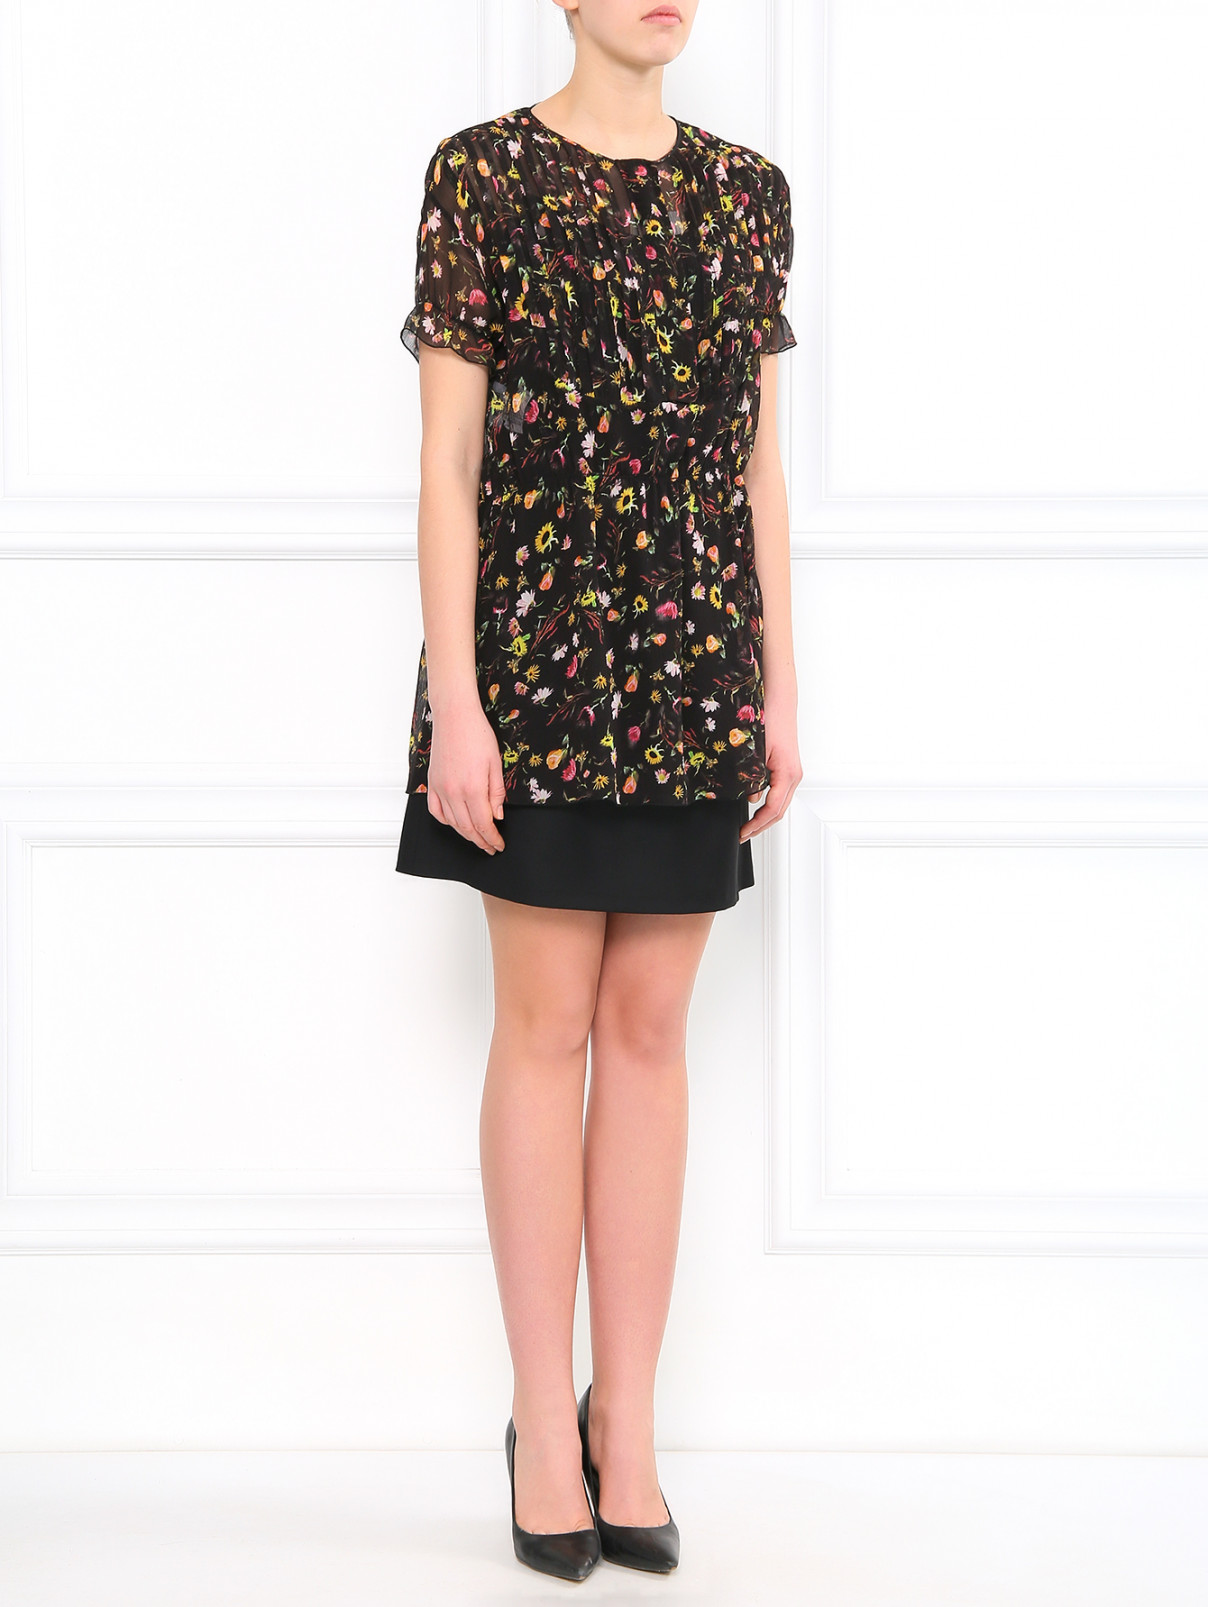 Шелковая блуза с цветочным узором Moschino Cheap&Chic  –  Модель Общий вид  – Цвет:  Узор